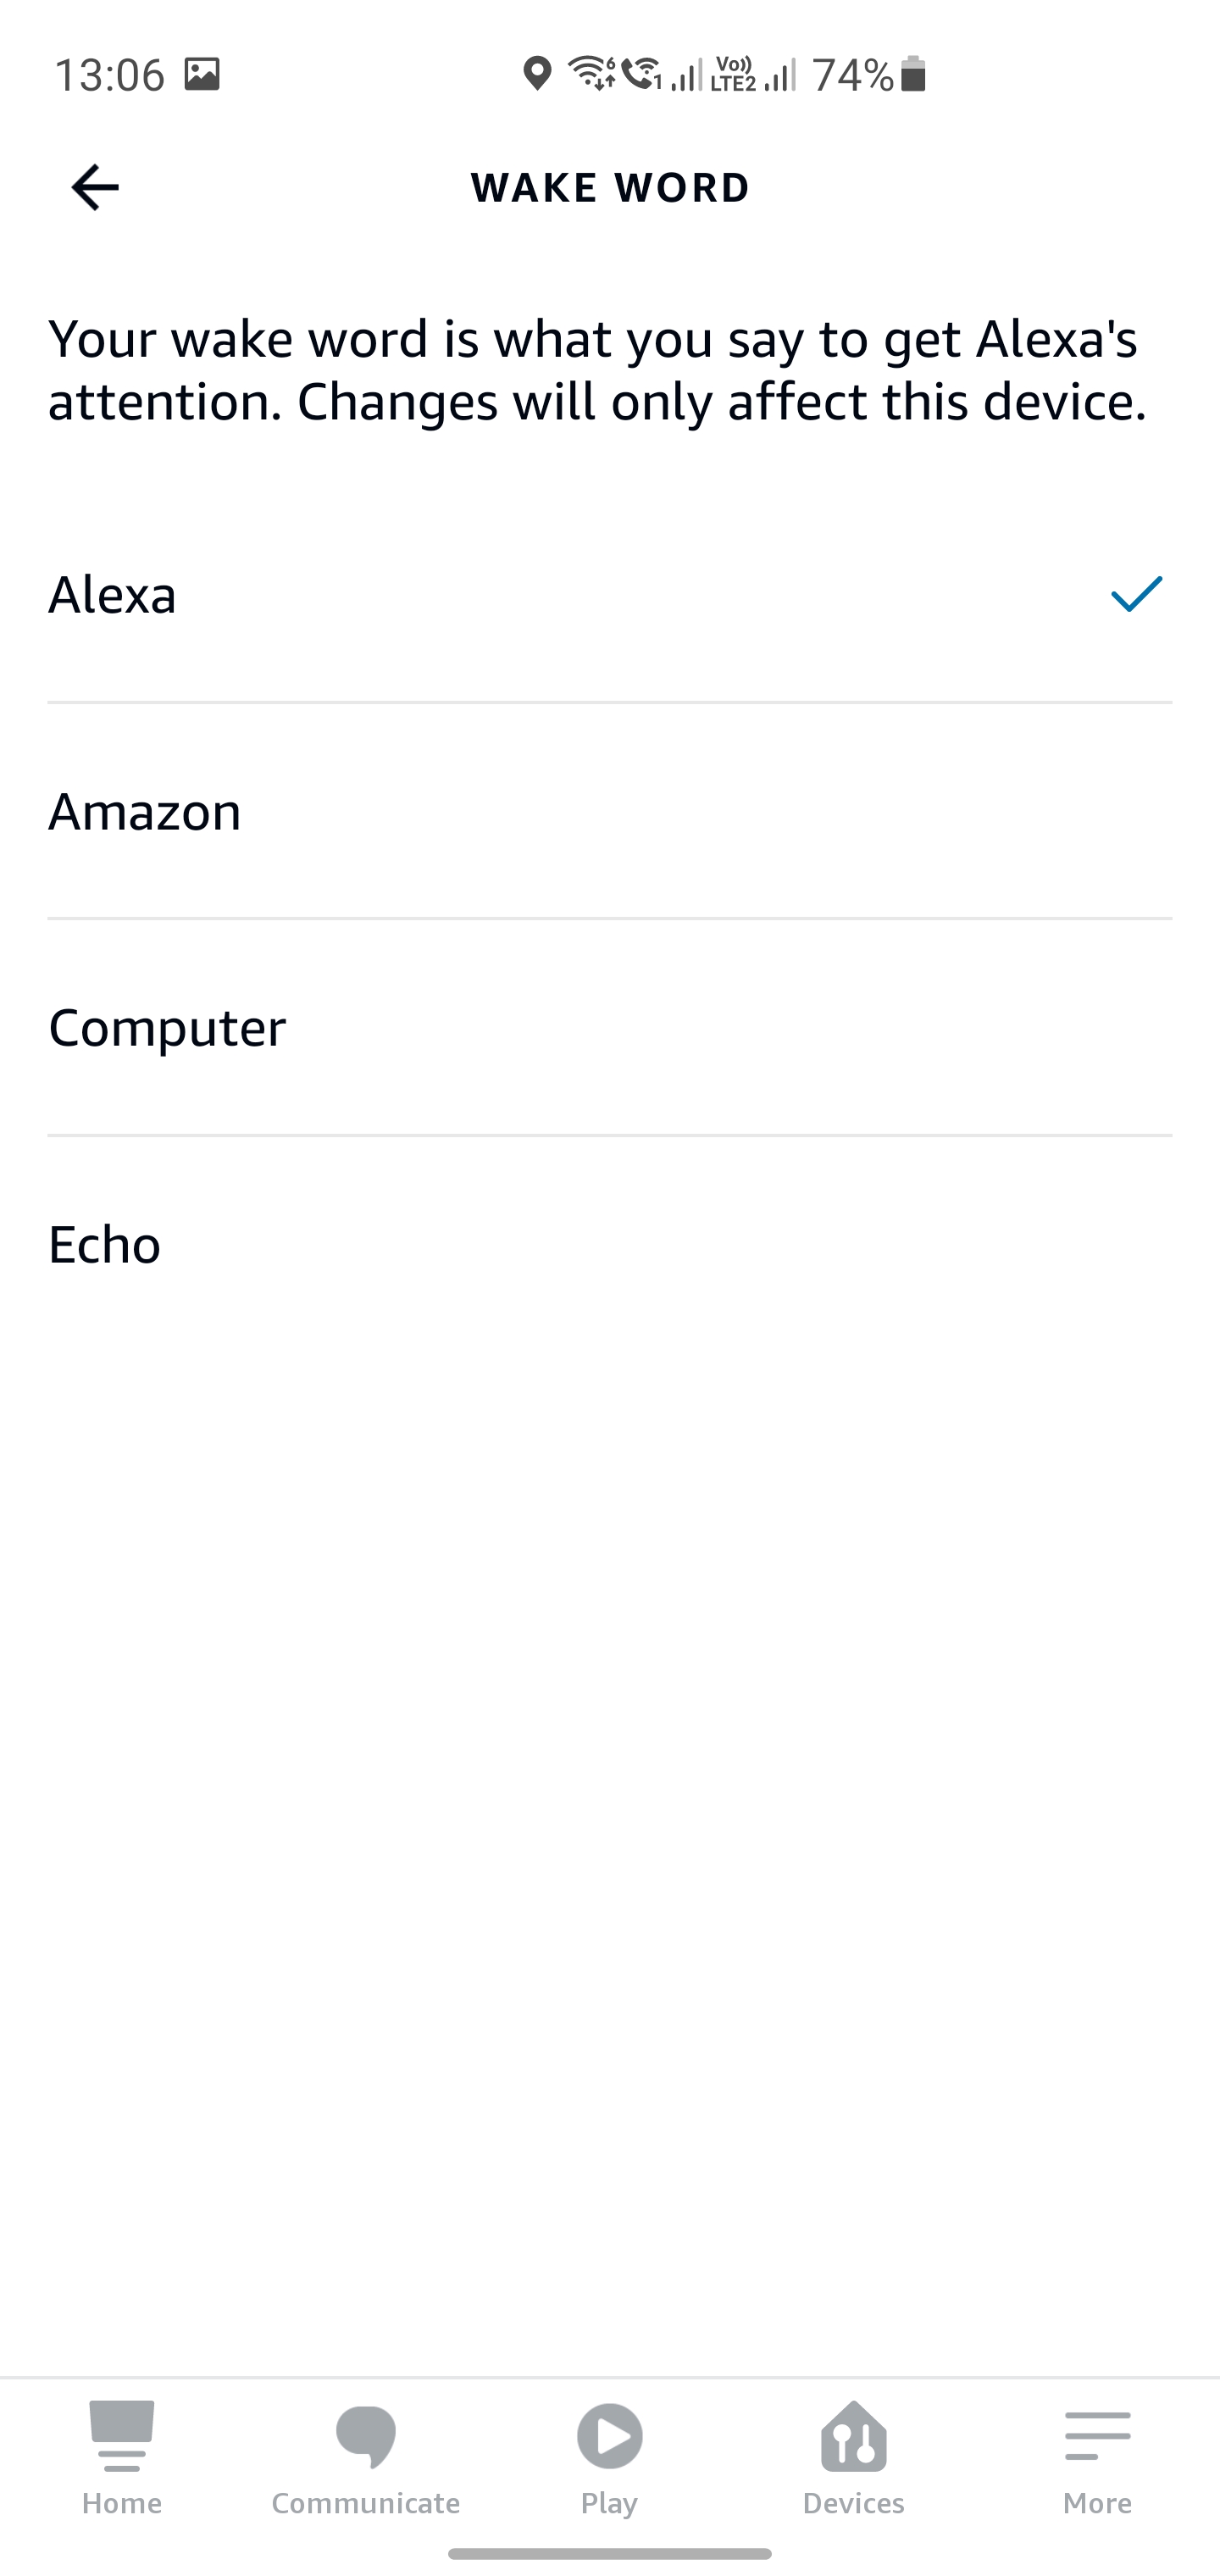 Asystent, muzyka i inteligentny dom w jednym głośniku - recenzja Amazon Echo 4 (wersja międzynarodowa)